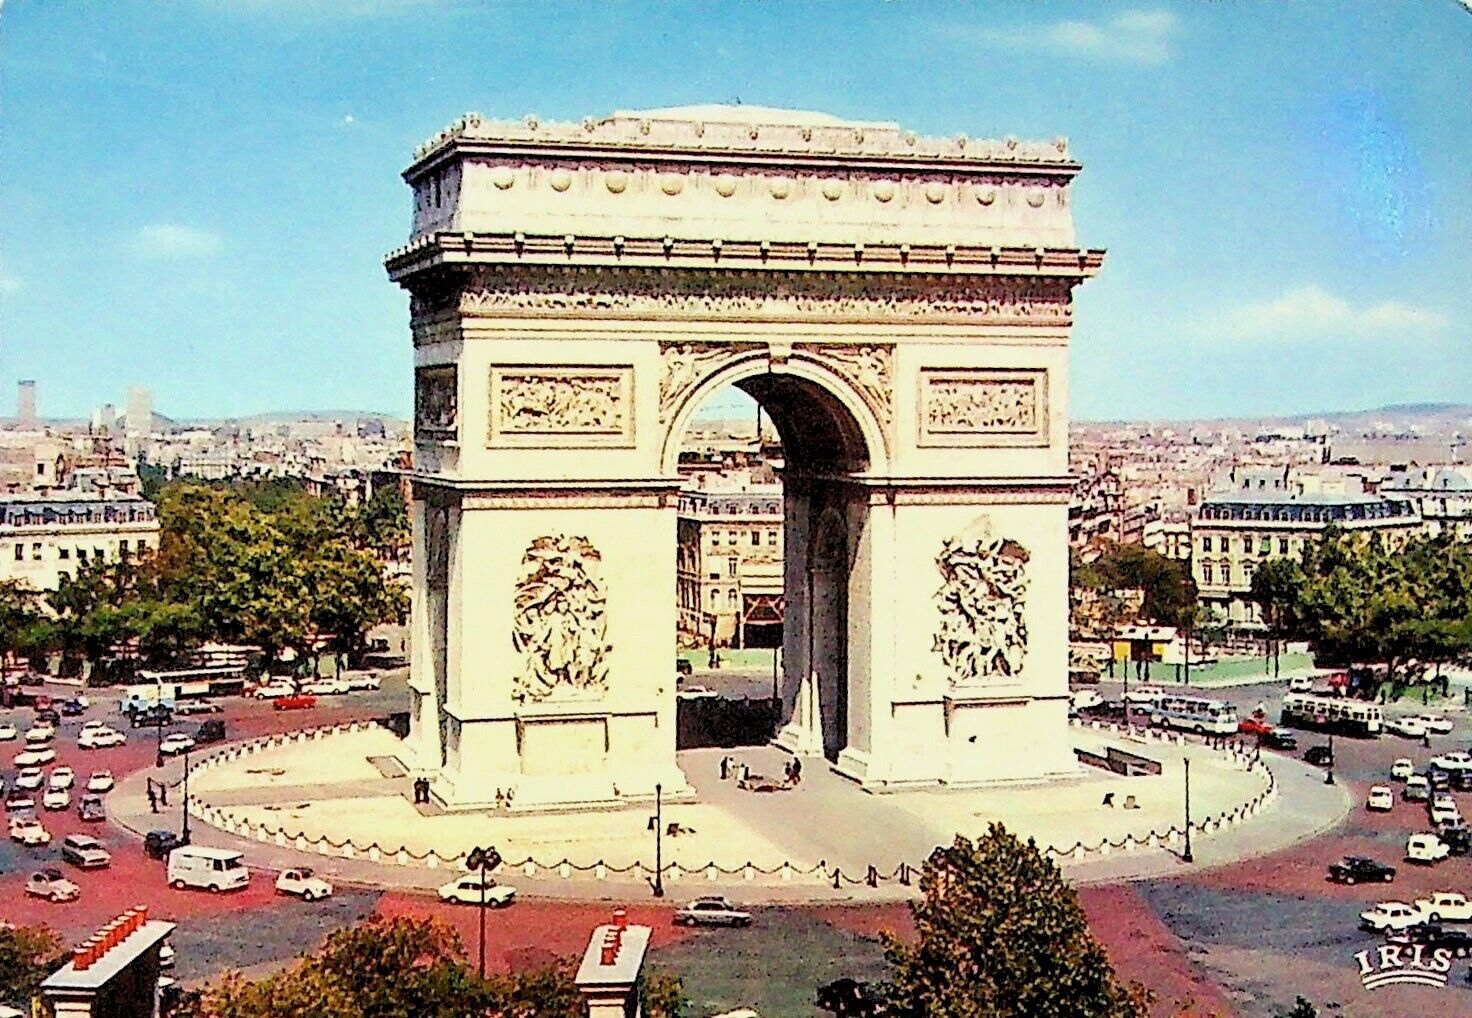 ARC DE TRIOMPHE MONUMENT PARIS, FRANCE - VINTAGE POSTCARD